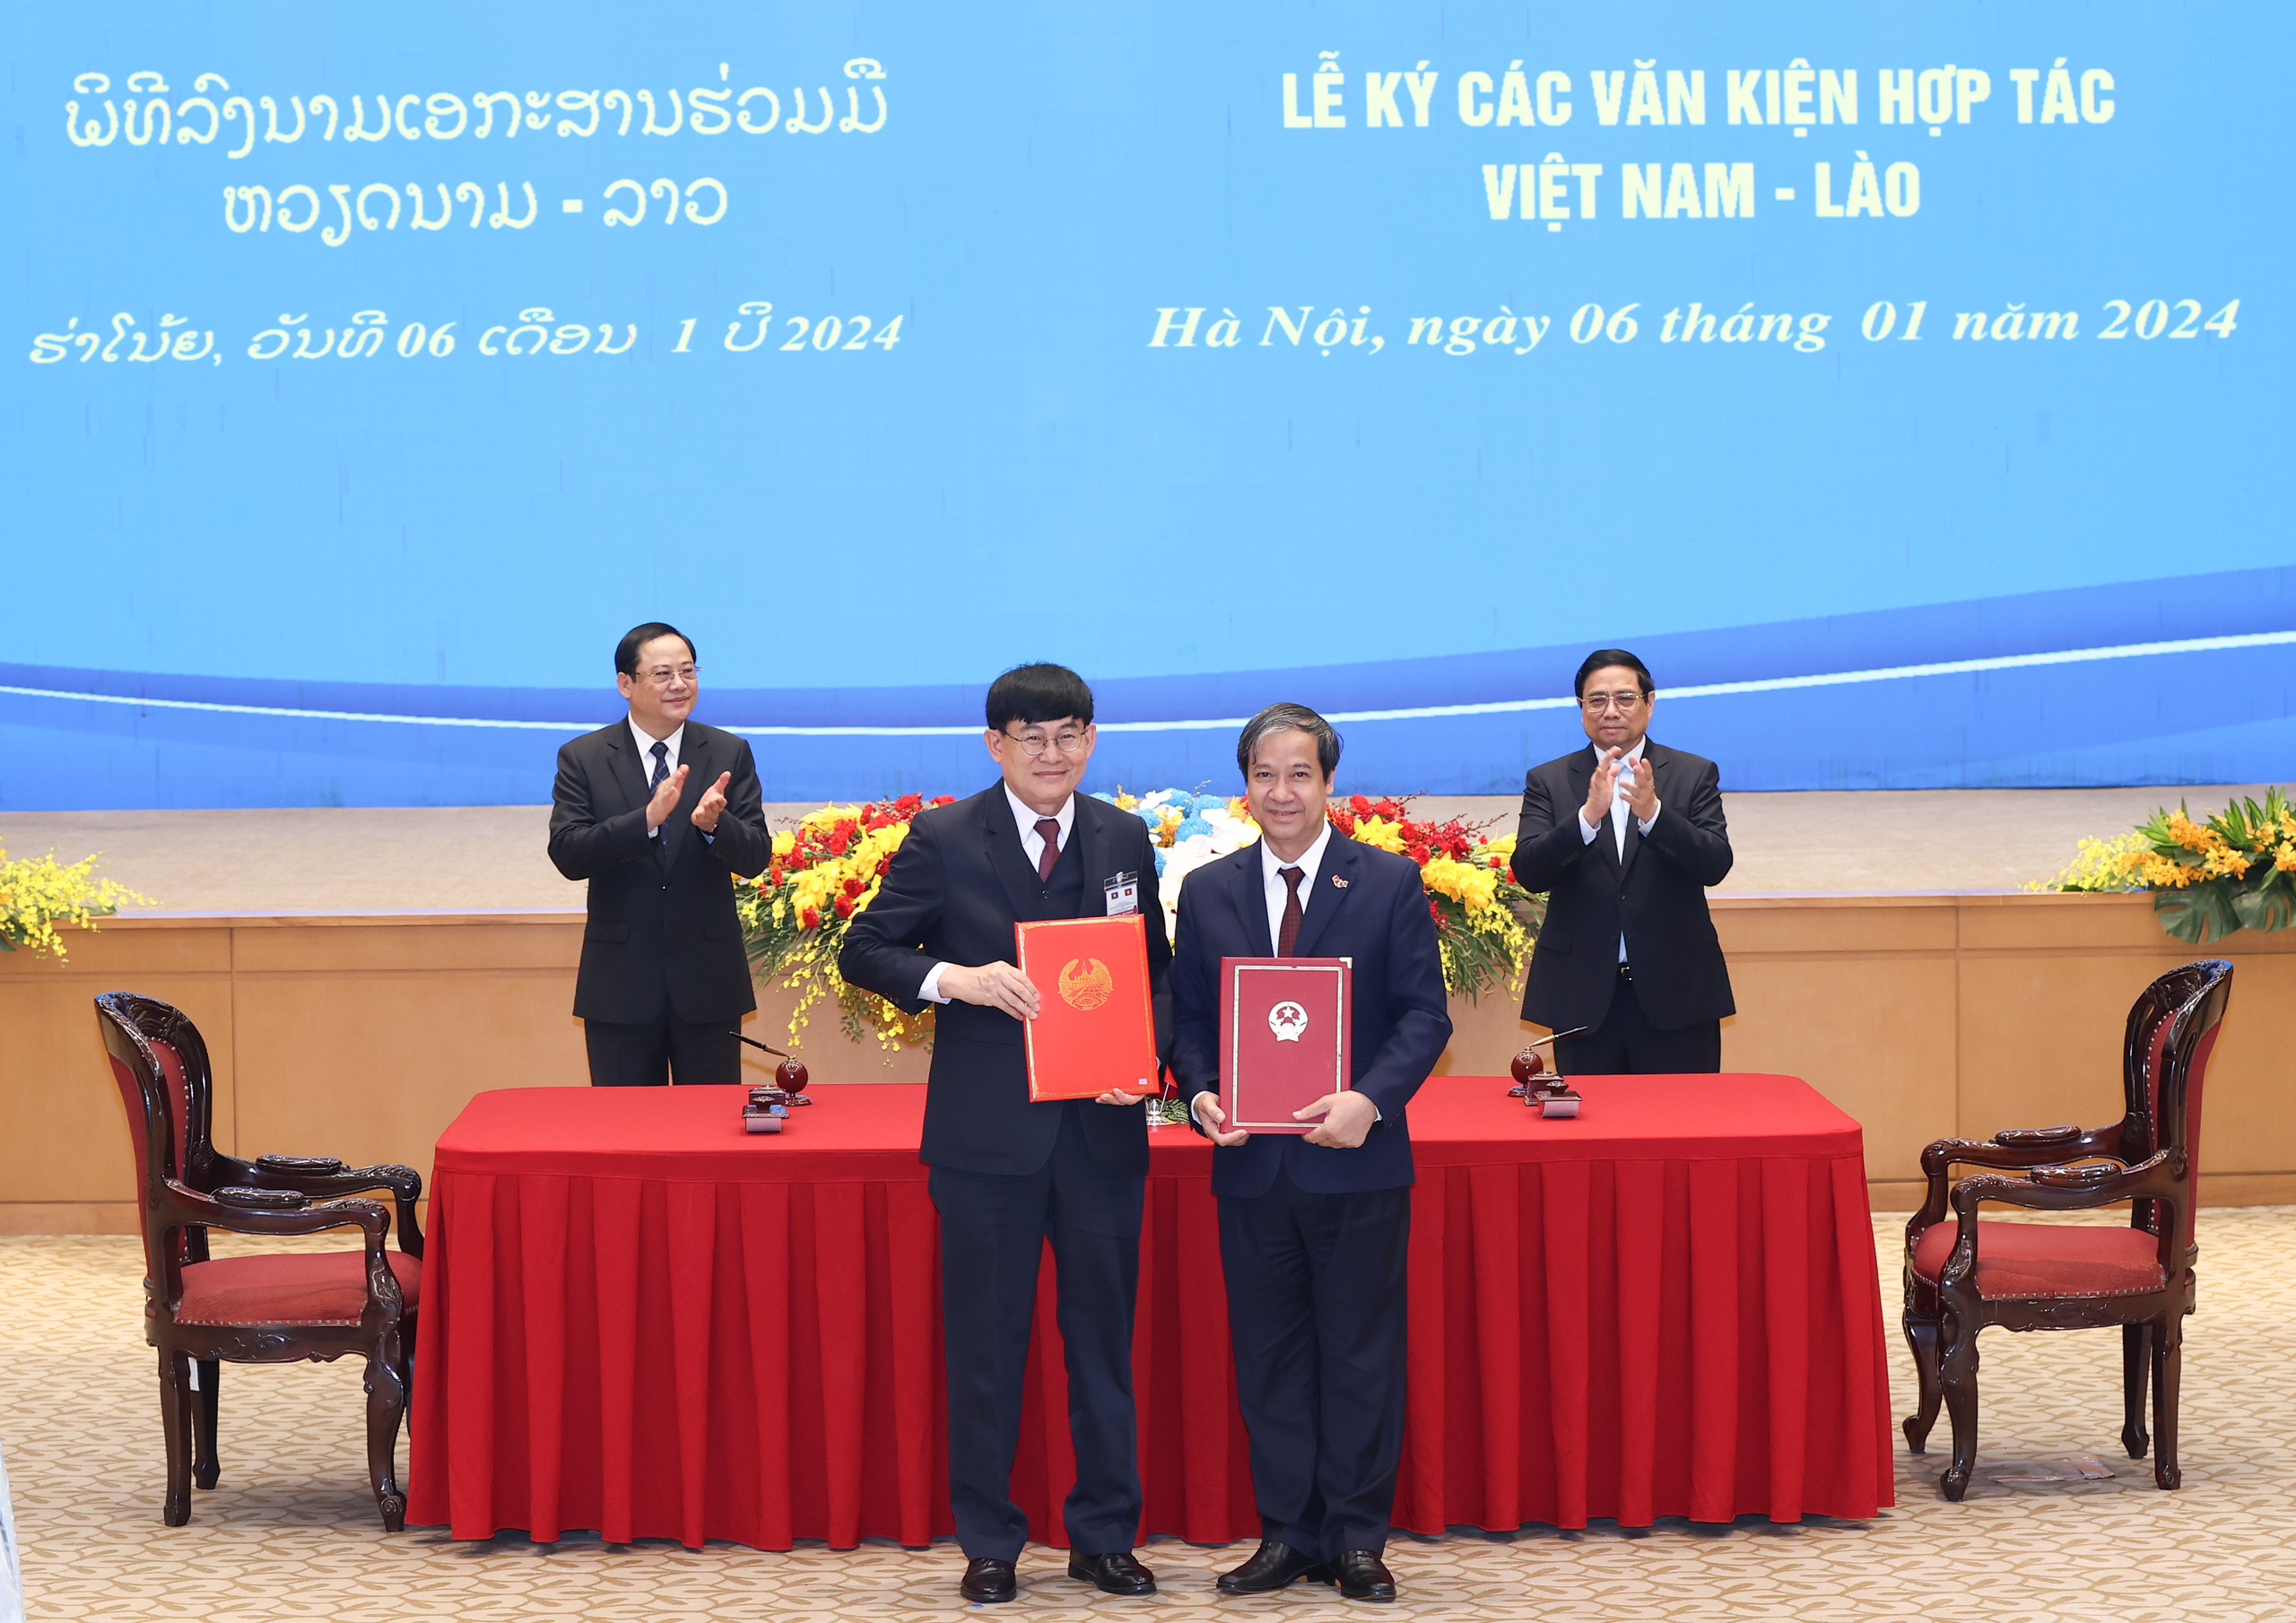 Bộ trưởng Bộ GD&ĐT Nguyễn Kim Sơn và Bộ trưởng Bộ Giáo dục và Thể thao Lào Phout Simmalavong ký kết Kế hoạch hợp tác trước sự chứng kiến của Thủ tướng Phạm Minh Chính và Thủ tướng nước Cộng hòa Dân chủ Nhân dân Lào Sonexay Siphandone.